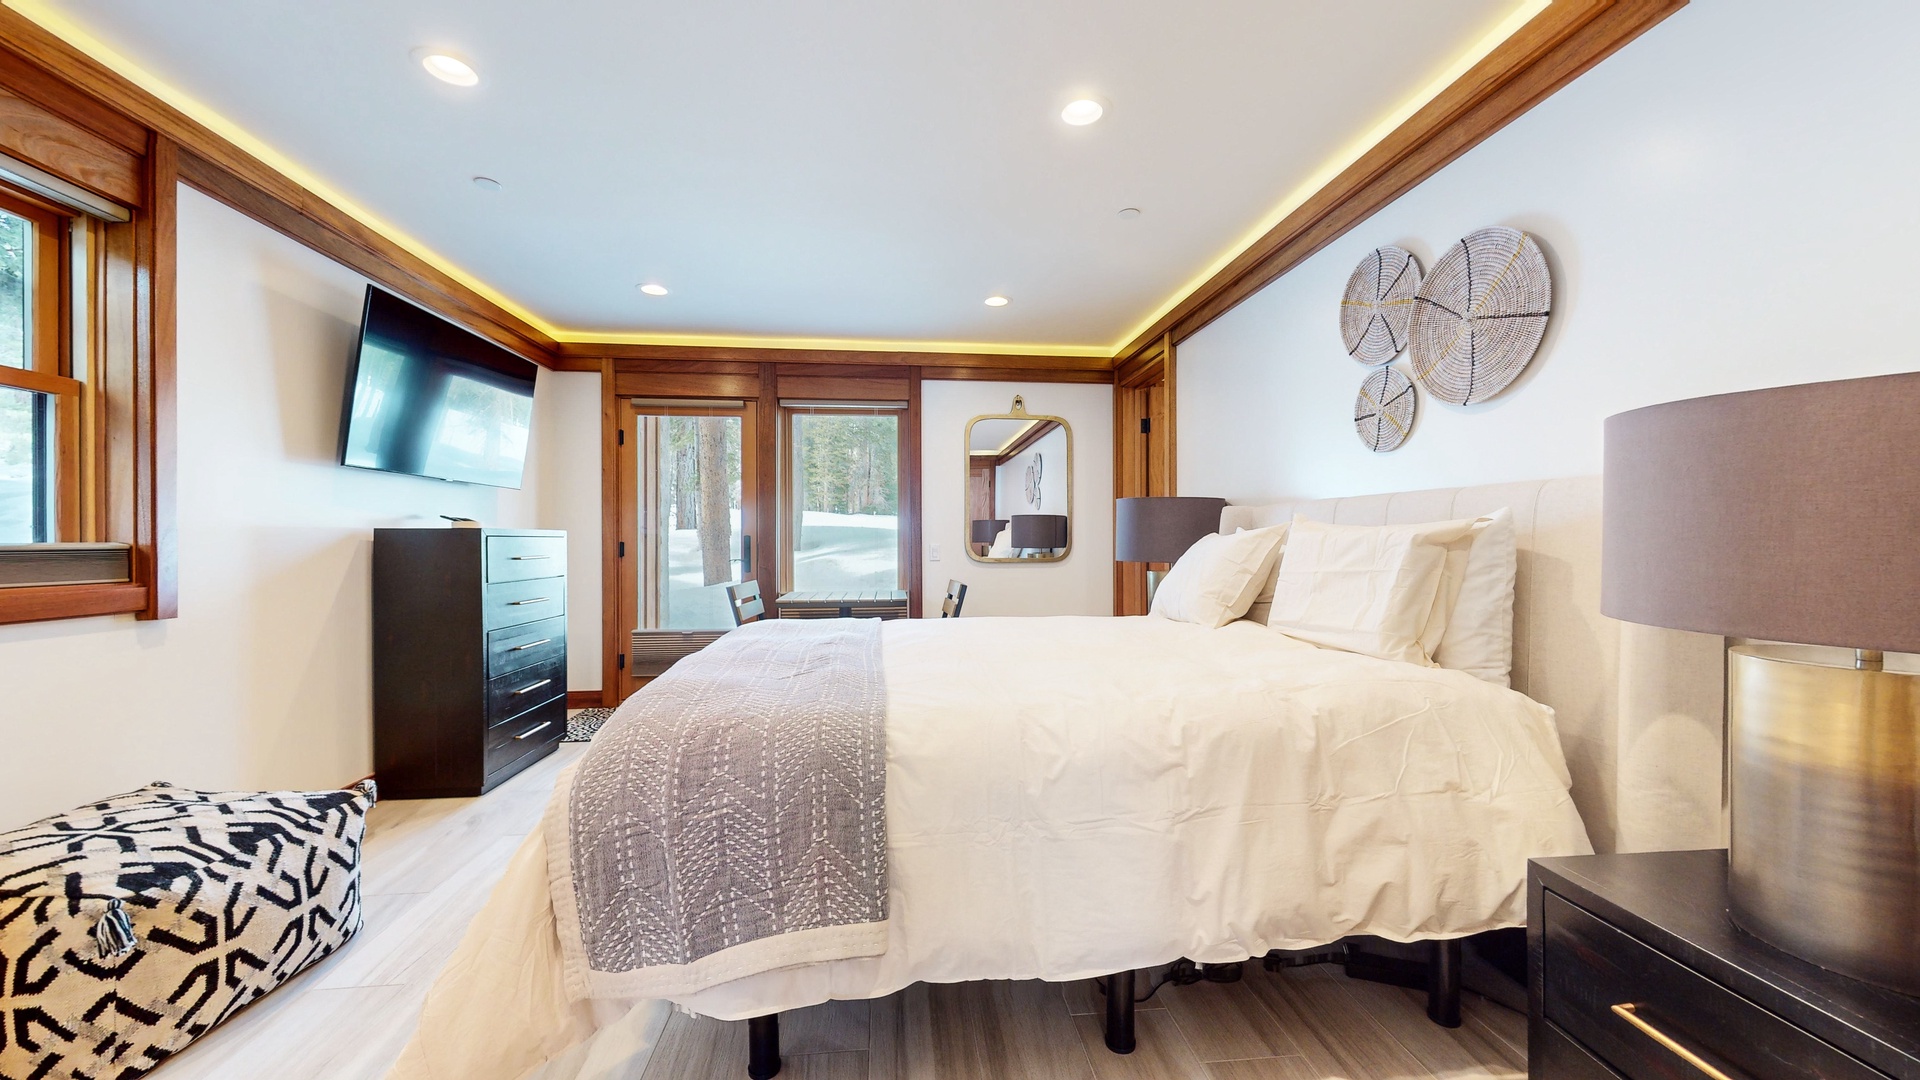 Bedroom 3 with queen bed, deck, Smart TV, and ensuite